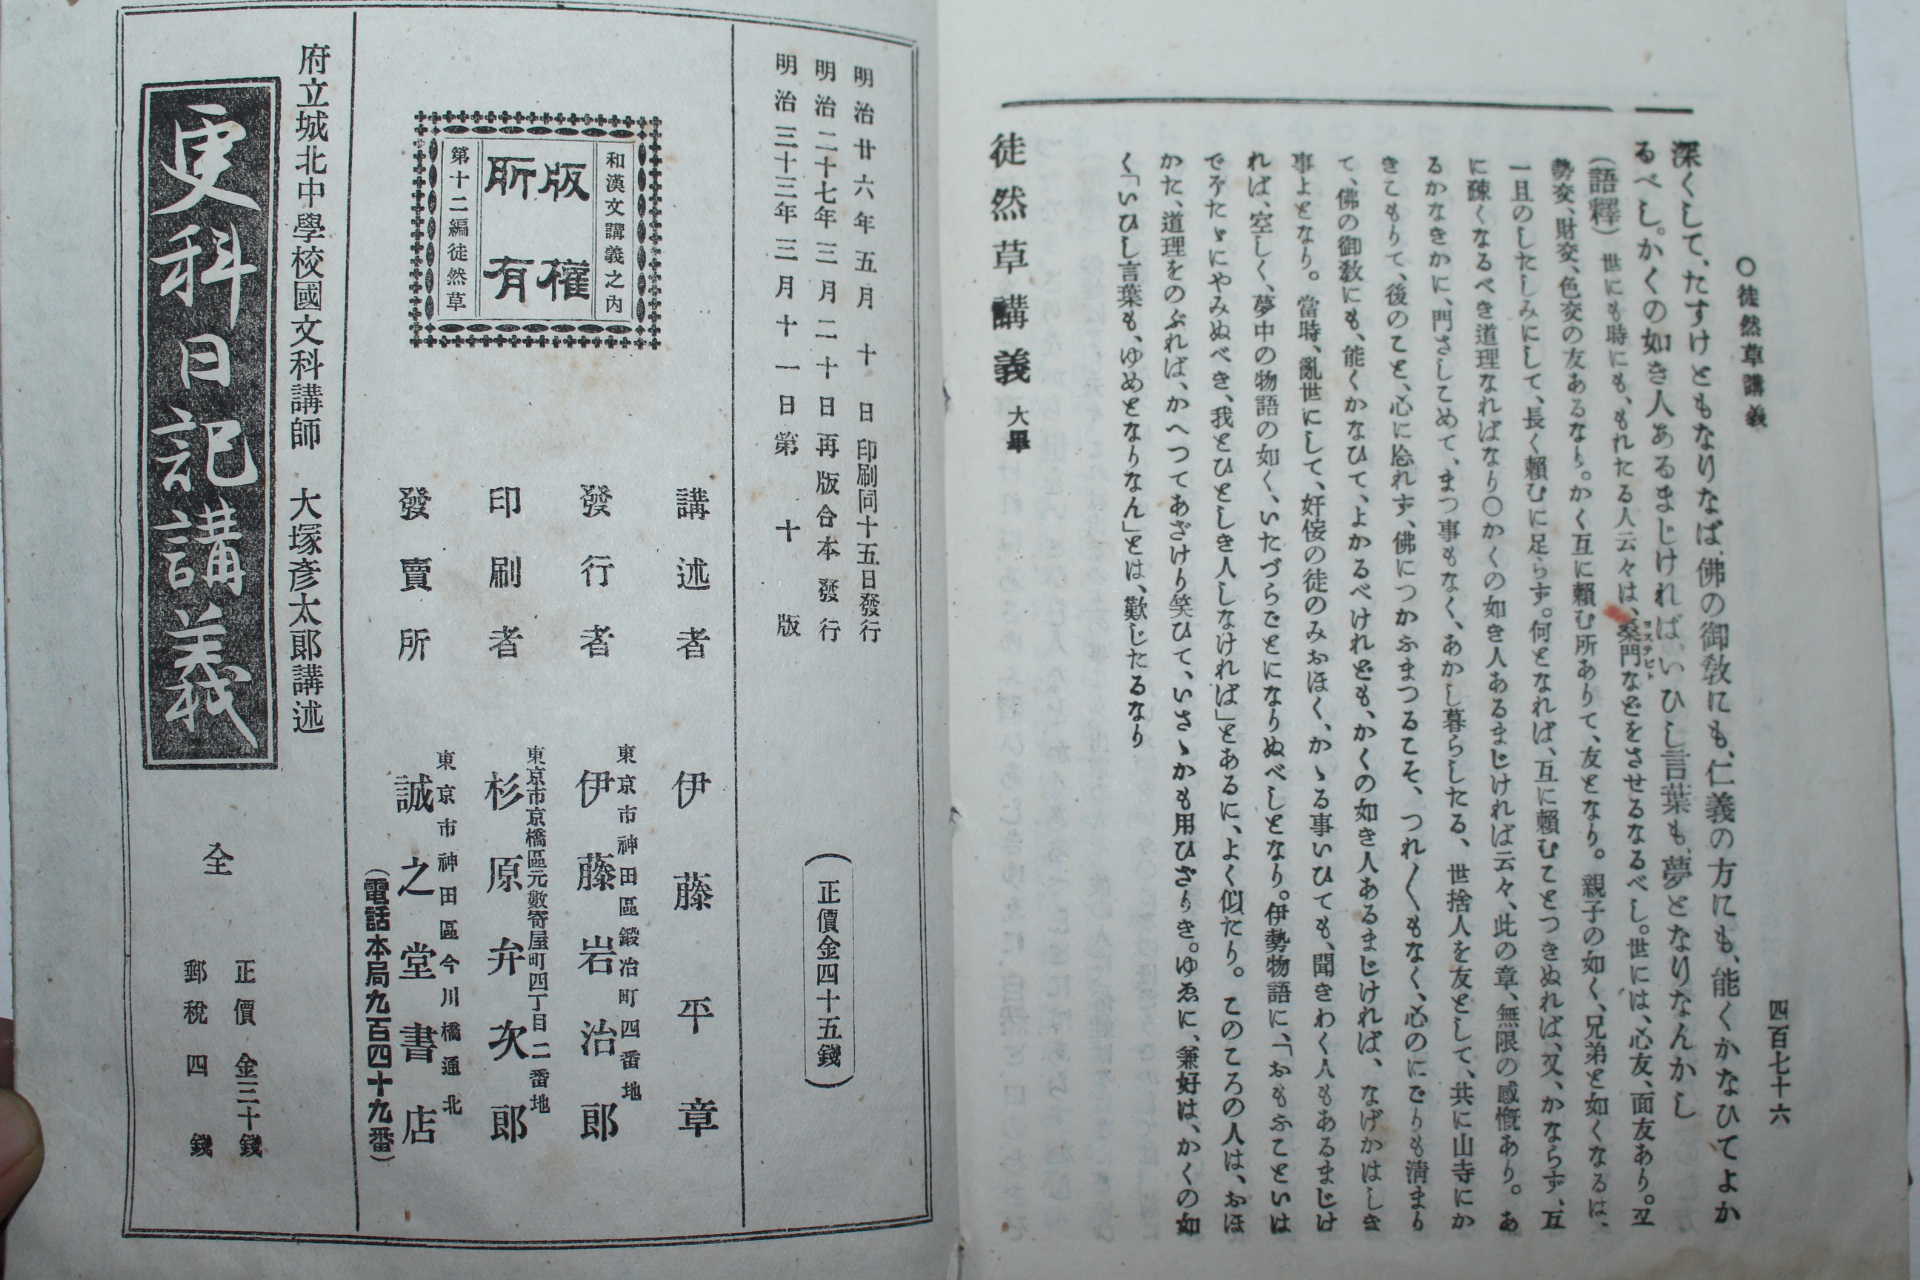 1900년(명치33년) 일본간행 도연초강의(徒然草講義)상하 2책완질